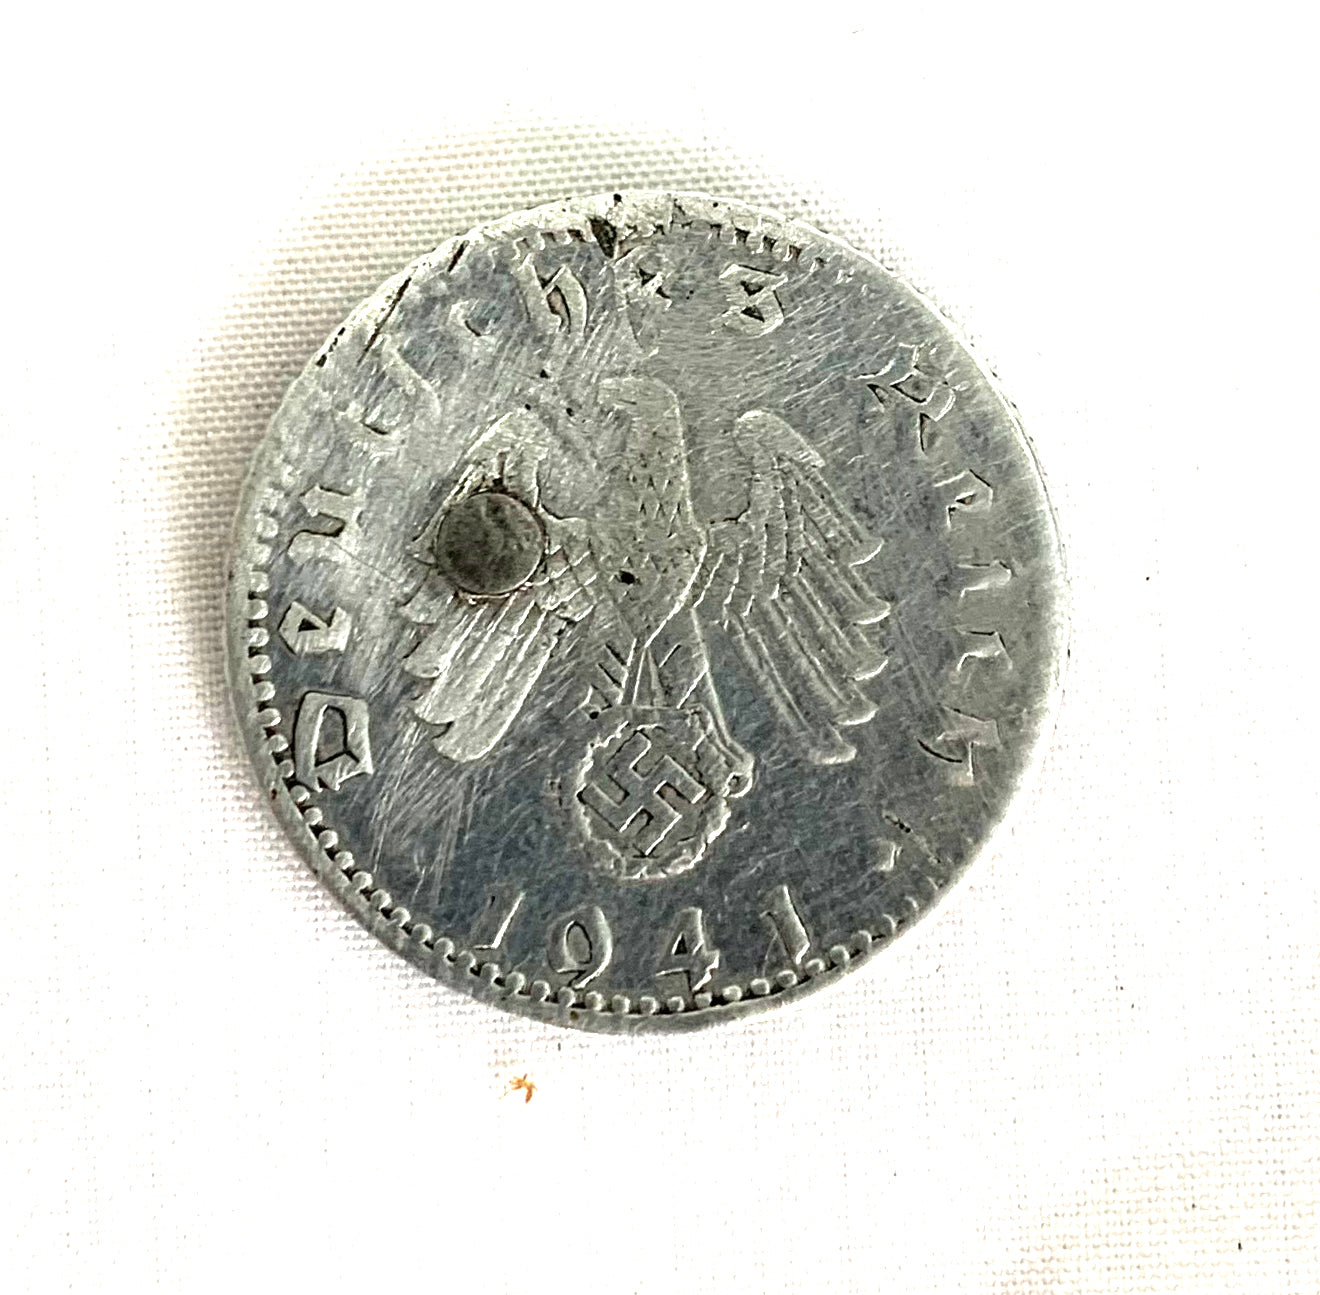 WW2 SOE German 50 Reichspfennig Coin with Concealed Blade. Dated 1941